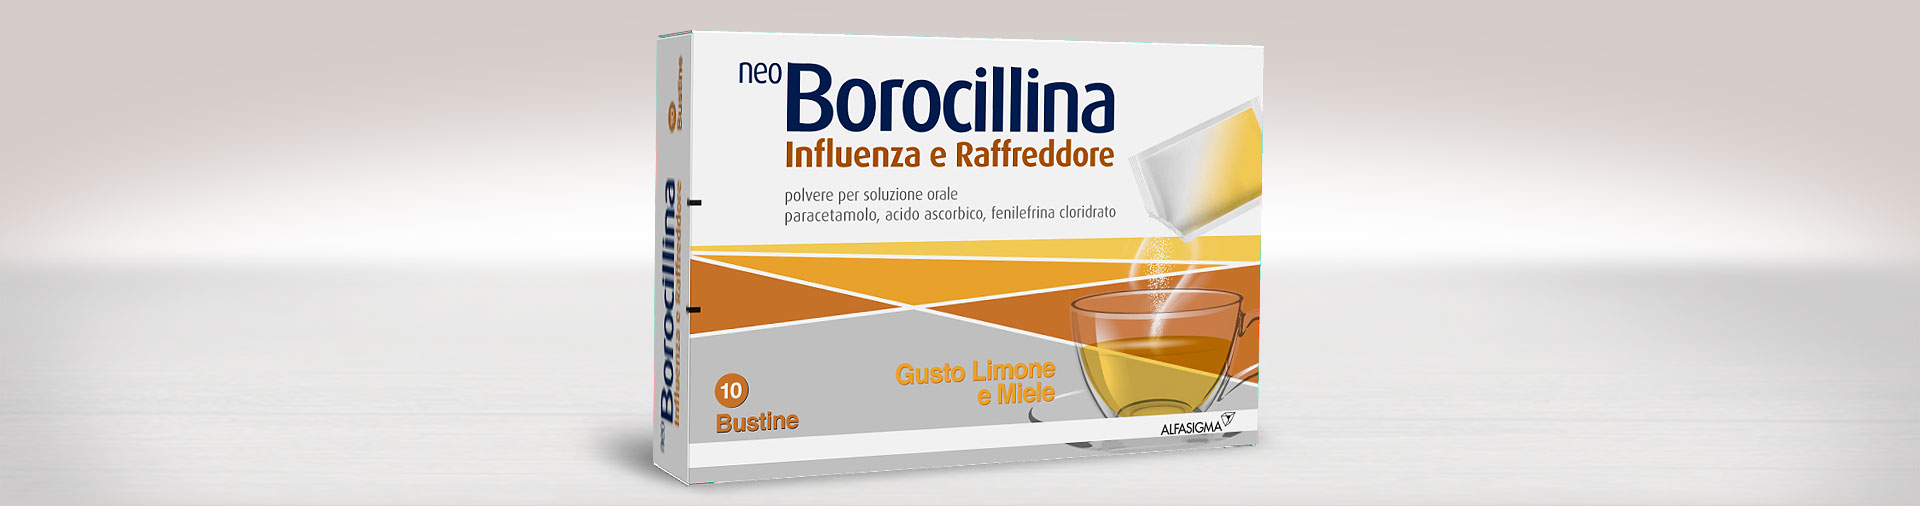 NeoBorocillina Influenza e Raffreddore